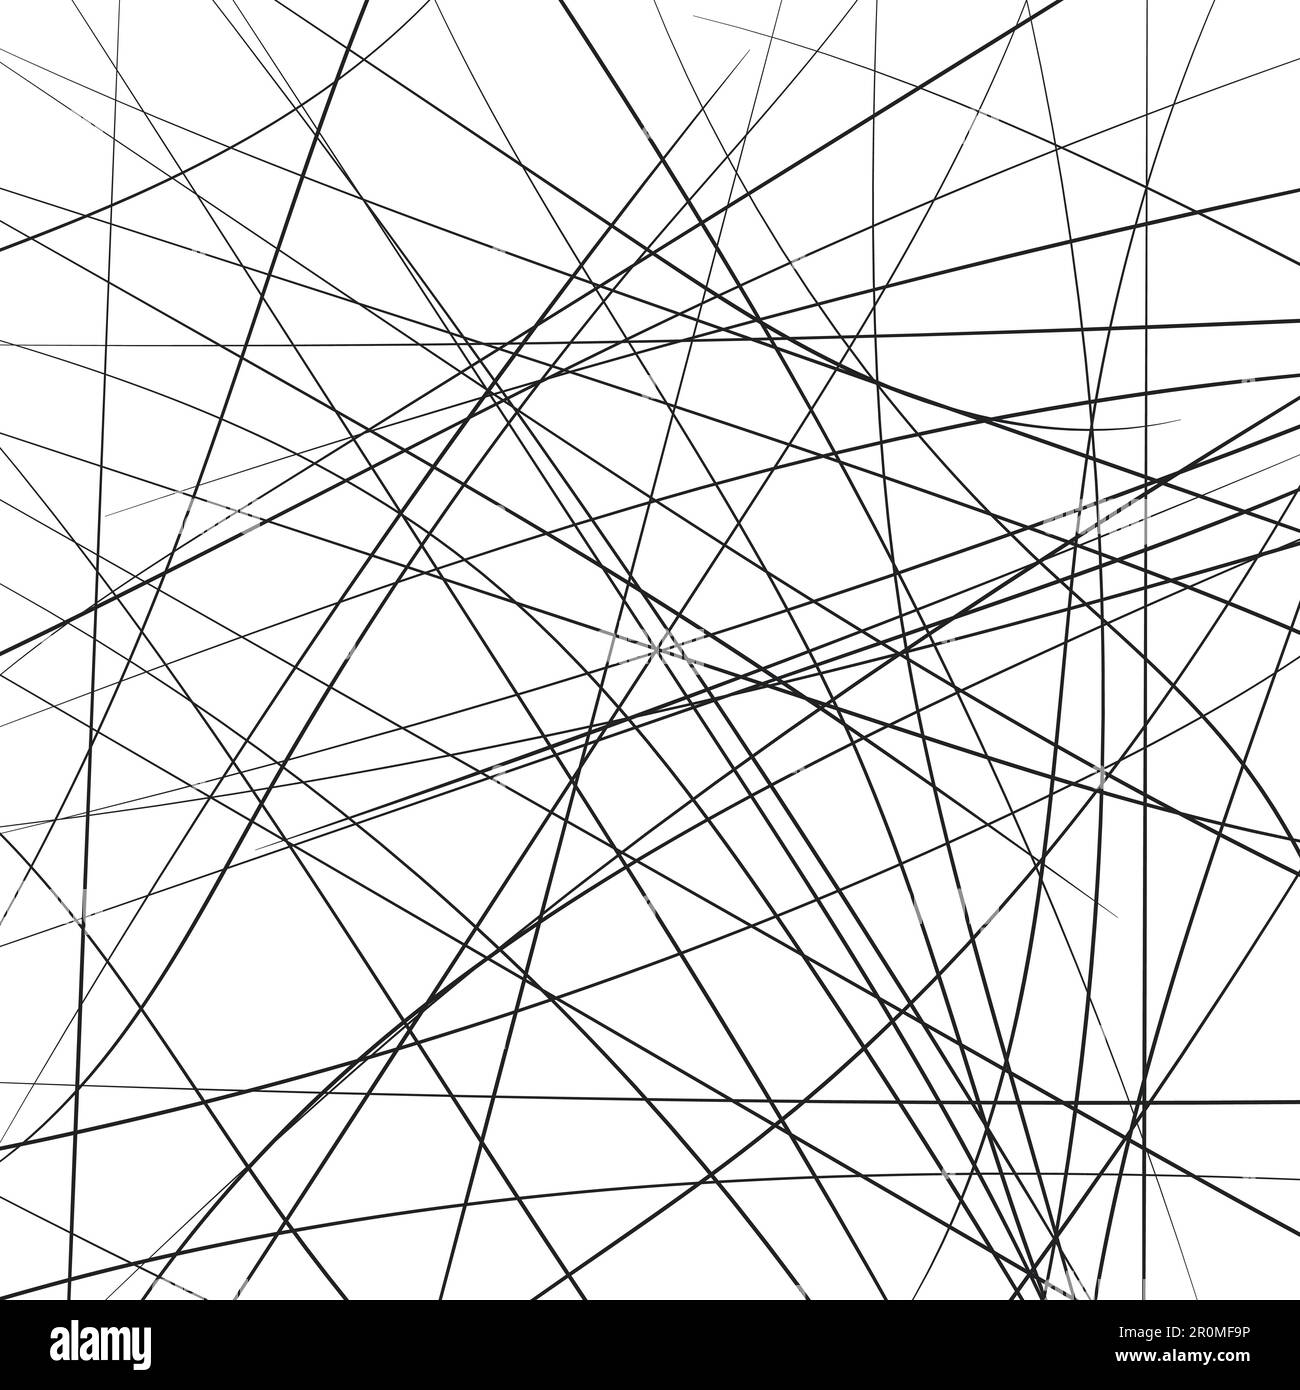 Linee a strisce caotiche casuali diagonalmente, motivo di sfondo geometrico astratto. Illustrazione vettoriale d'arte moderna, movimento browniano Illustrazione Vettoriale